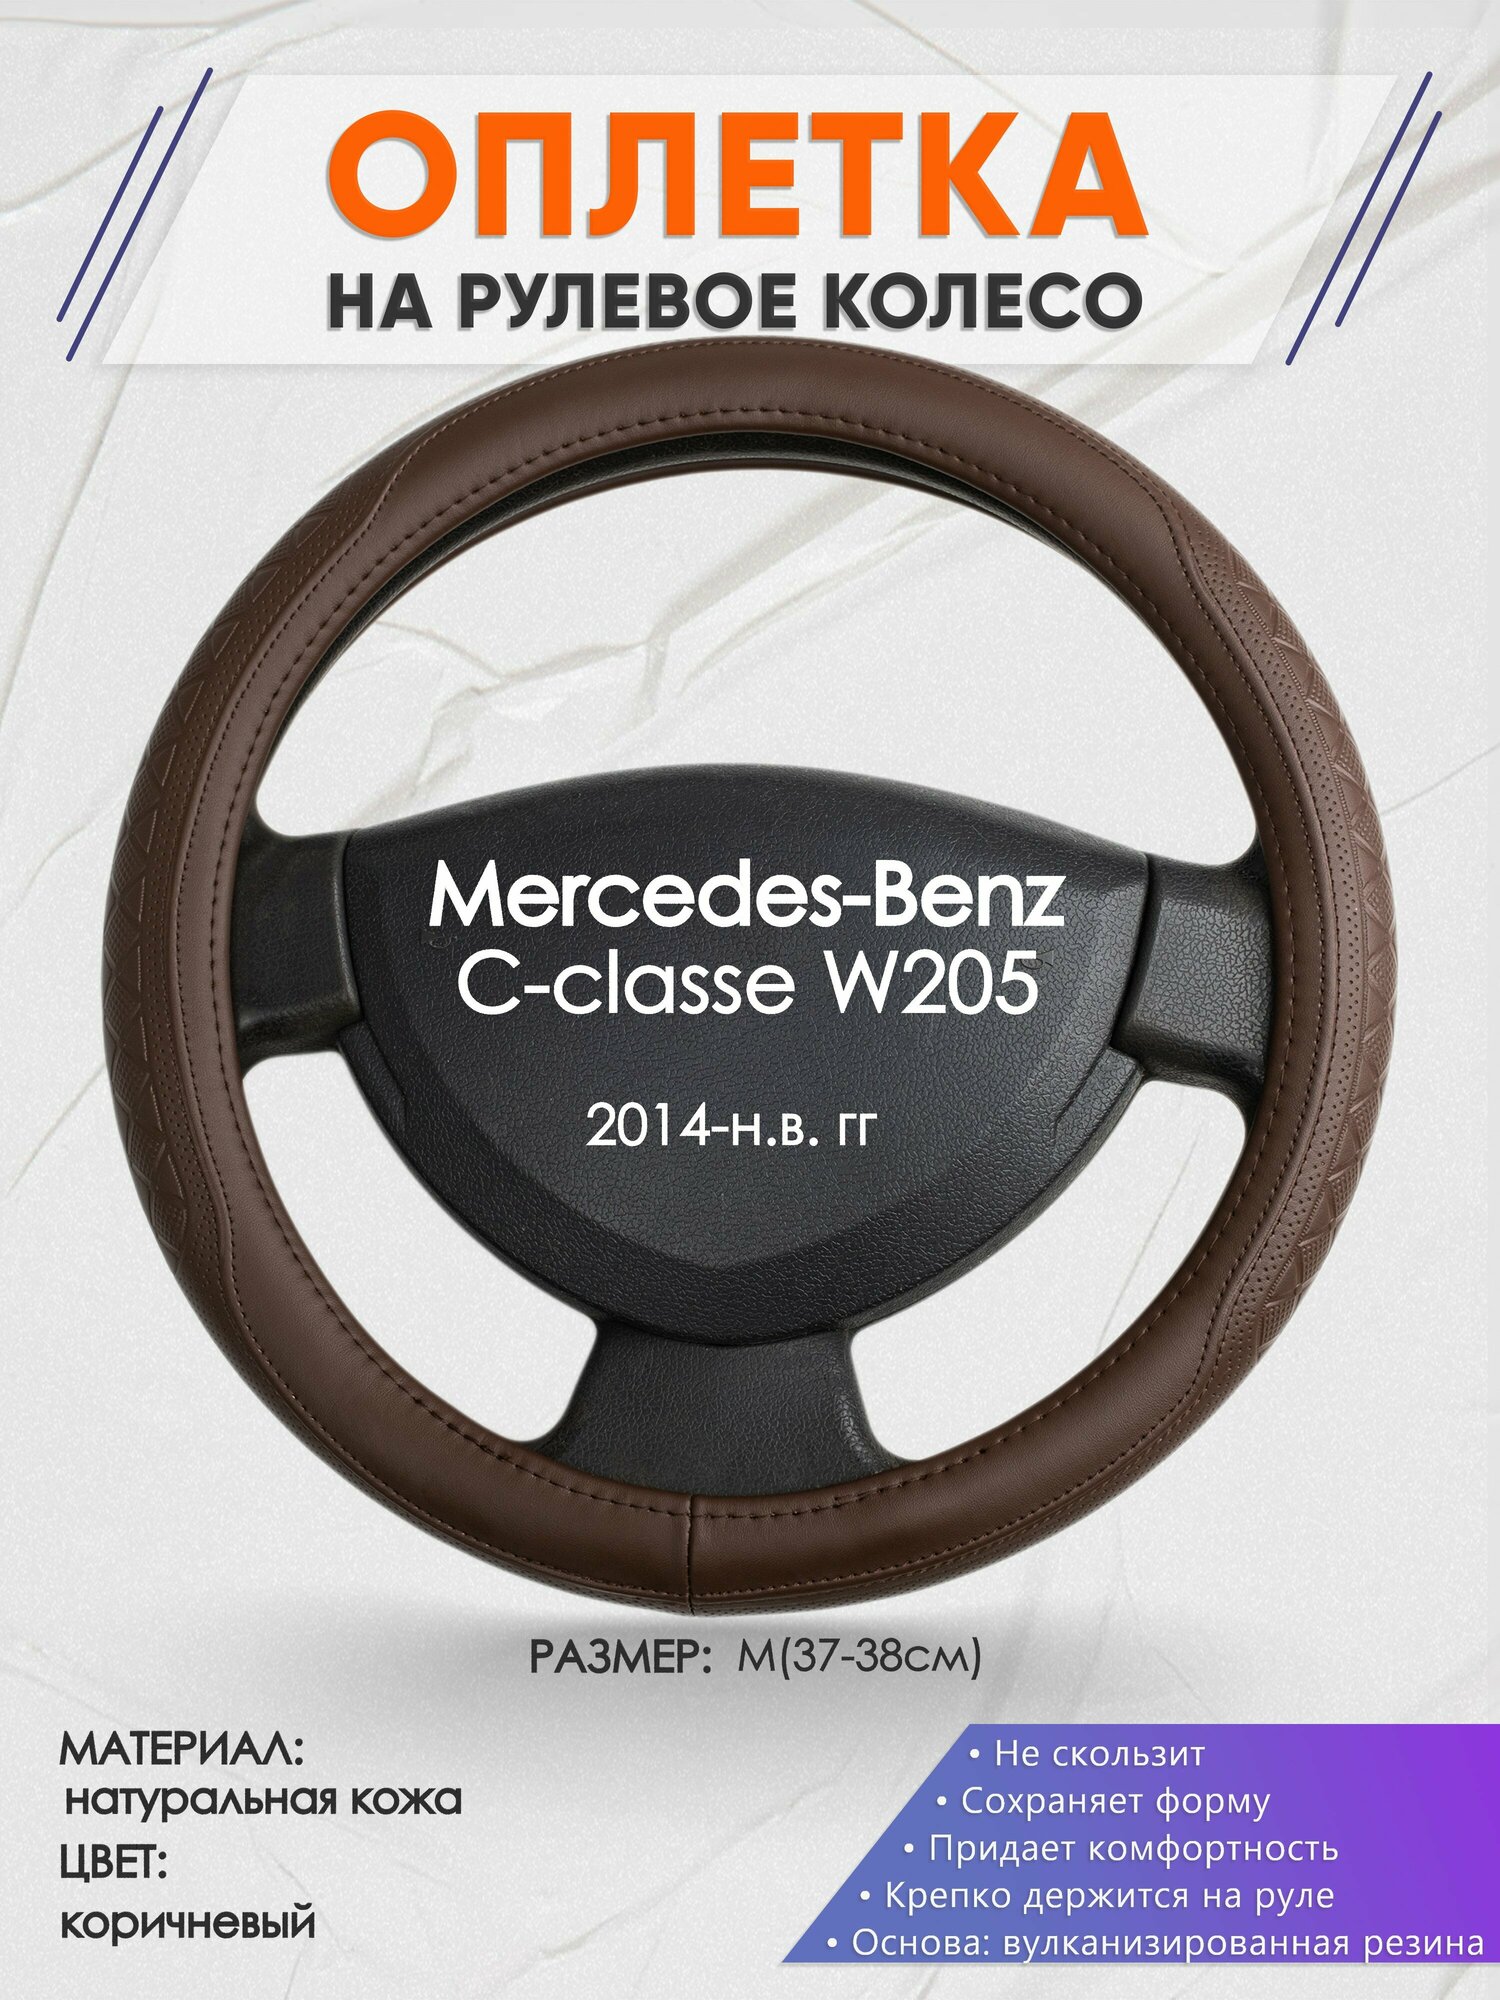 Оплетка на руль для Mercedes-Benz W205(Мерседес Бенц Ц класс в205) 2014-н. в, M(37-38см), Натуральная кожа 88